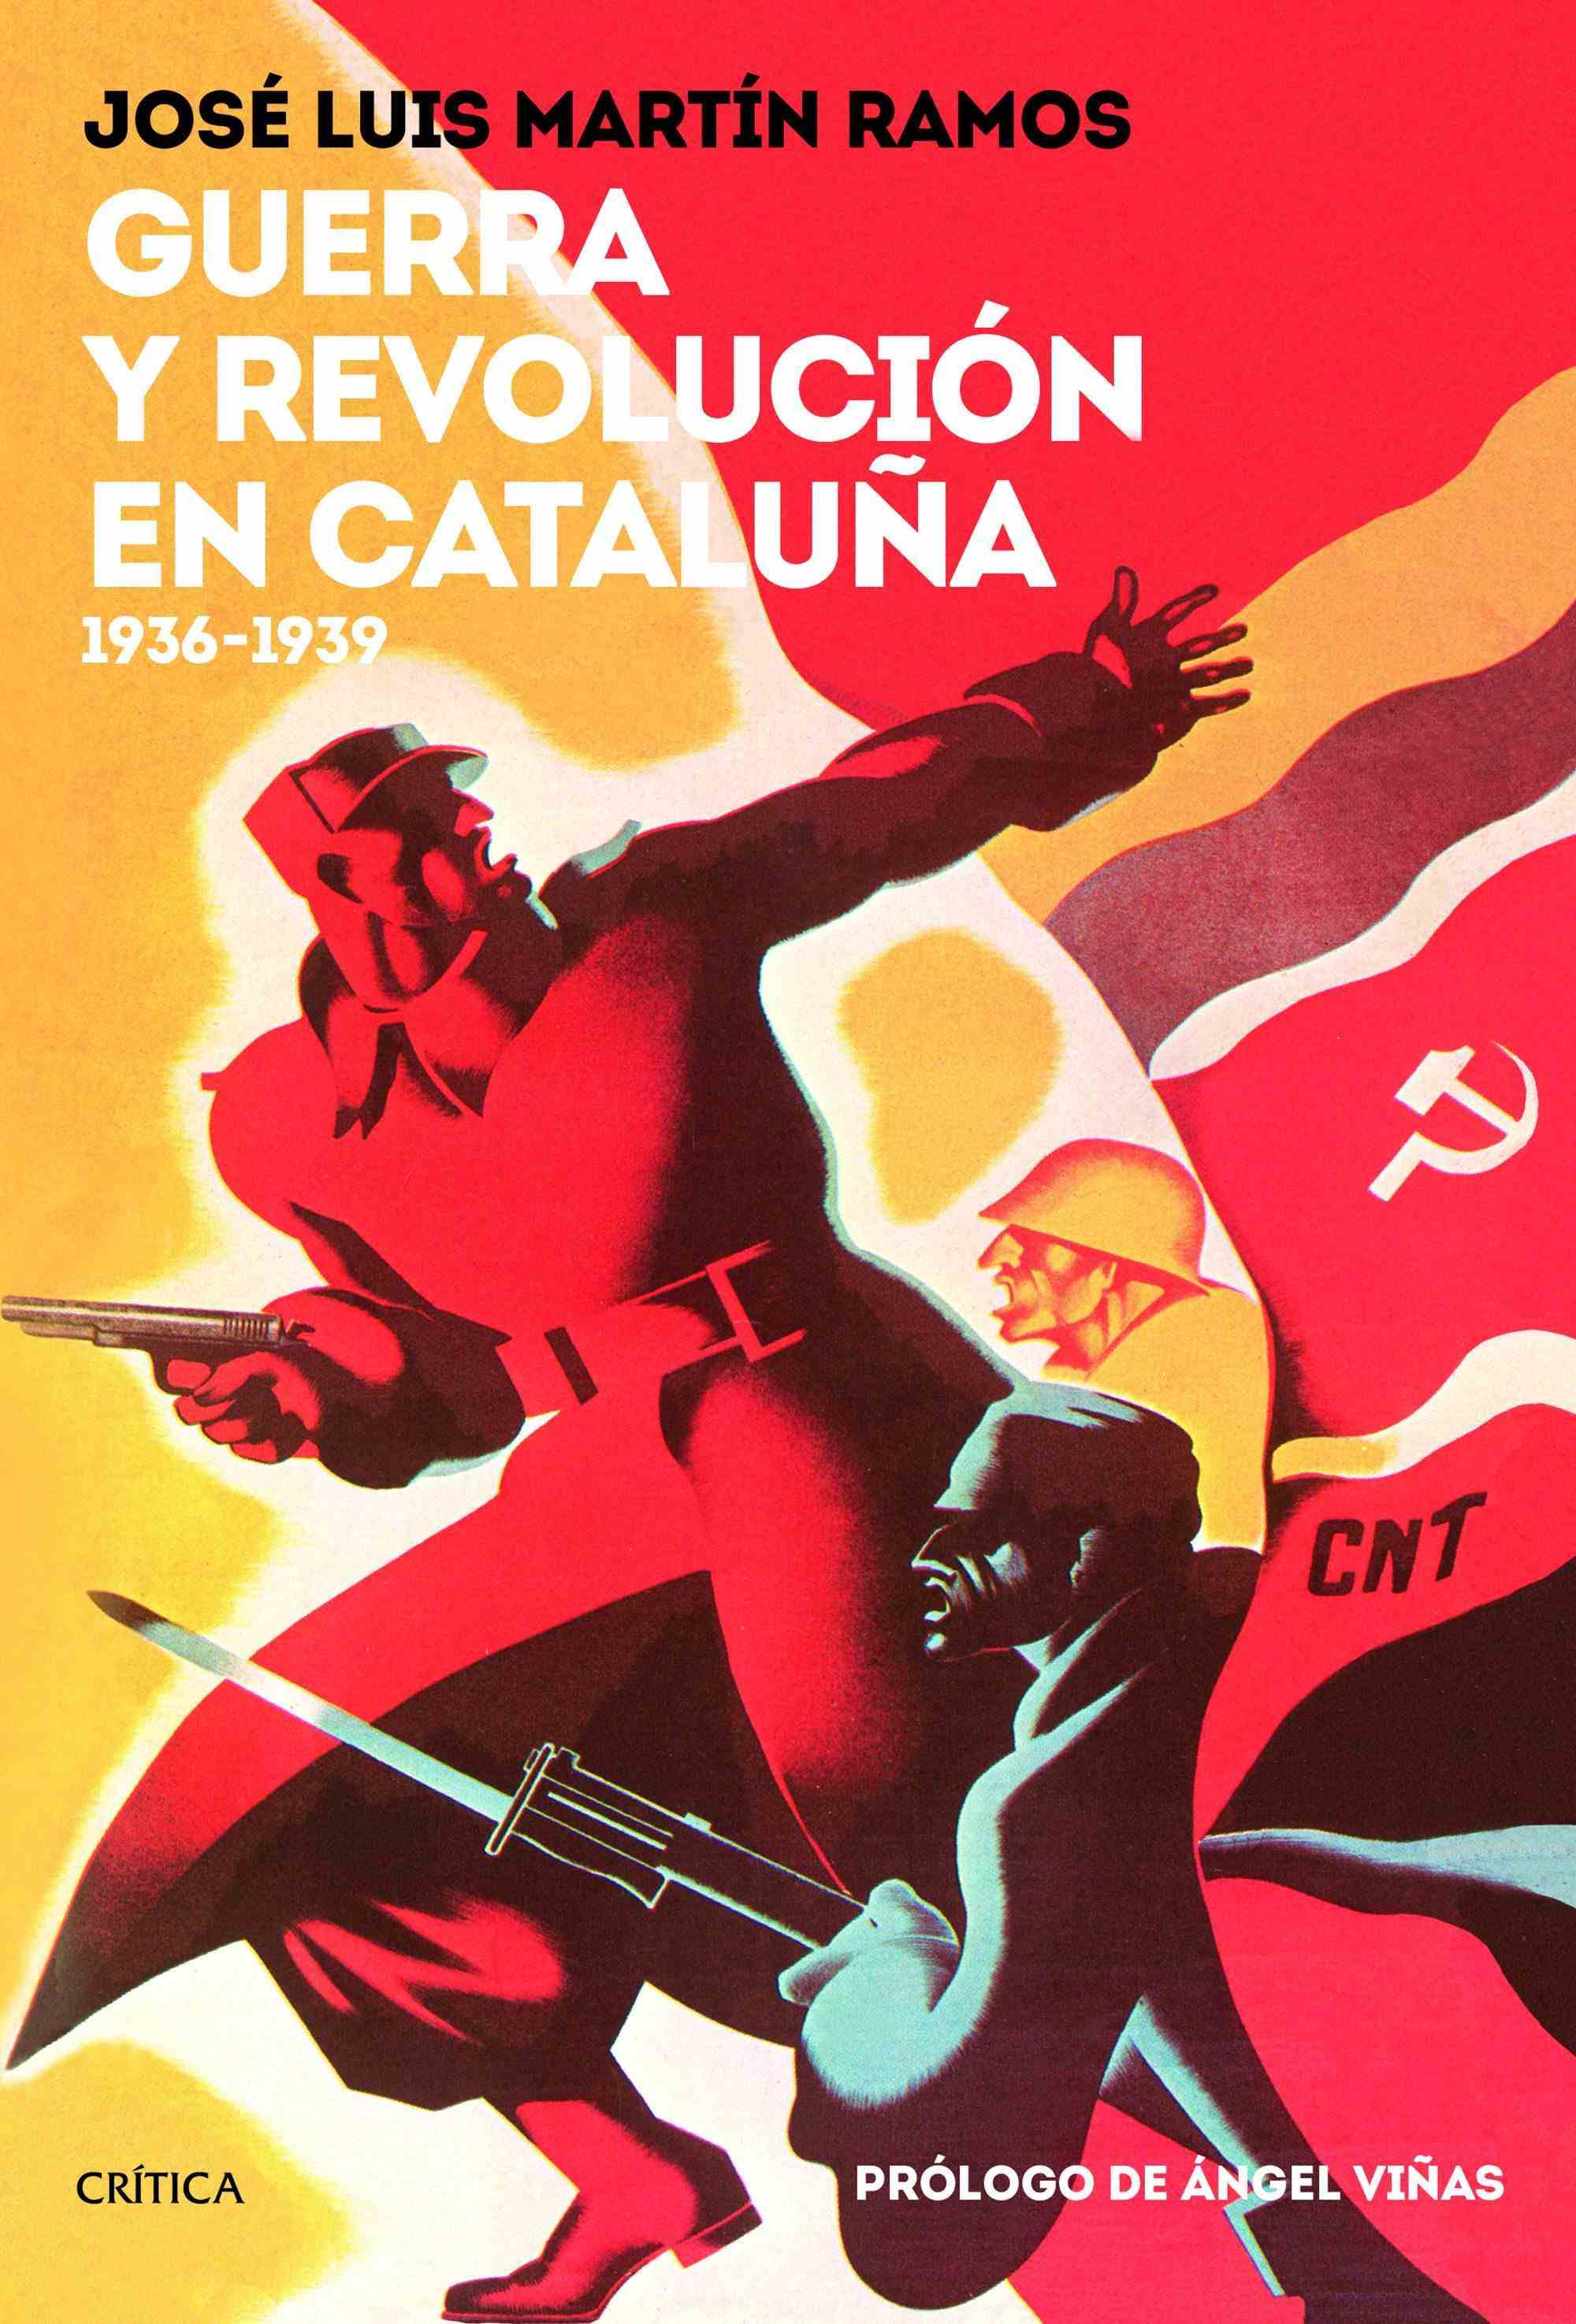 Portada del libro GUERRA Y REVOLUCIÓN EN CATALUÑA 1936-1939